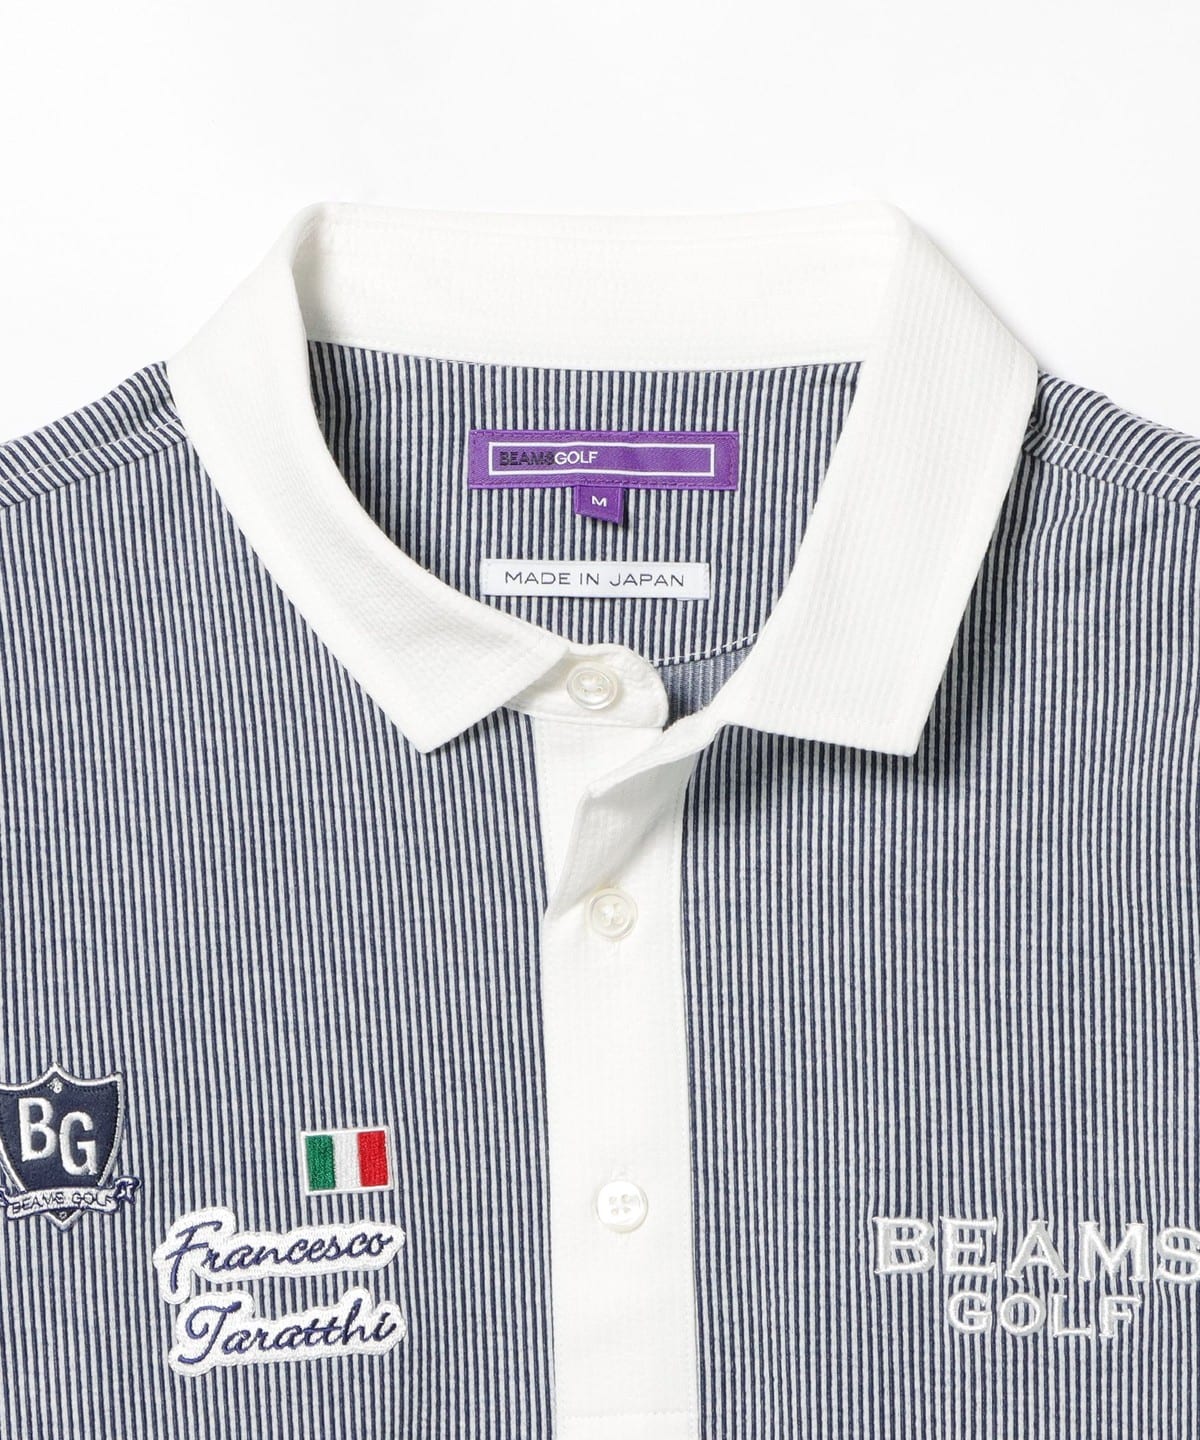 【タグ付き新品未使用】BEAMS GOLF ビームスゴルフ ニットポロシャツ L